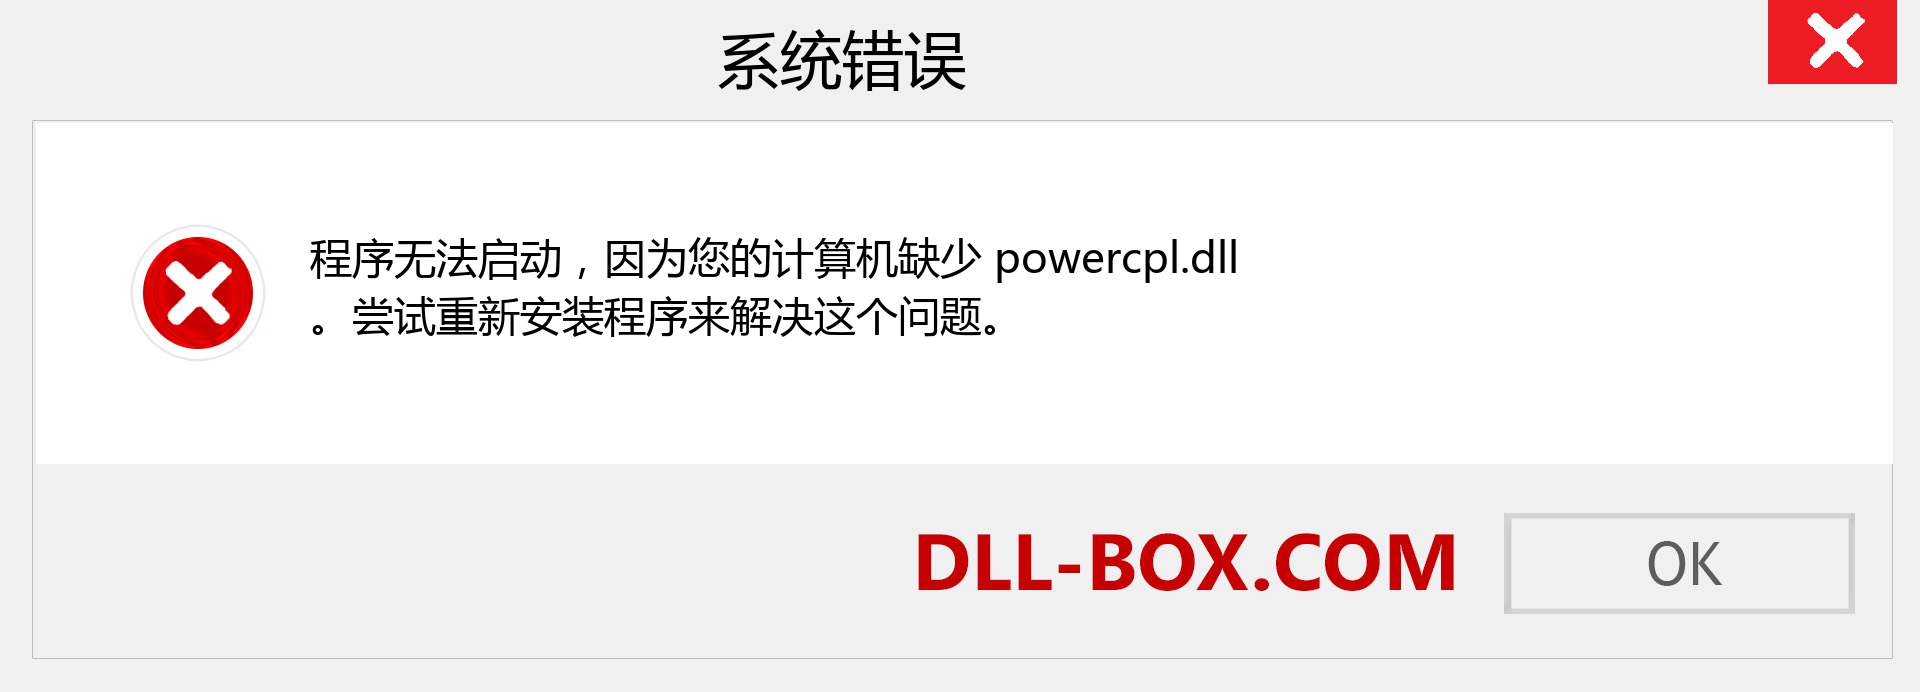 powercpl.dll 文件丢失？。 适用于 Windows 7、8、10 的下载 - 修复 Windows、照片、图像上的 powercpl dll 丢失错误